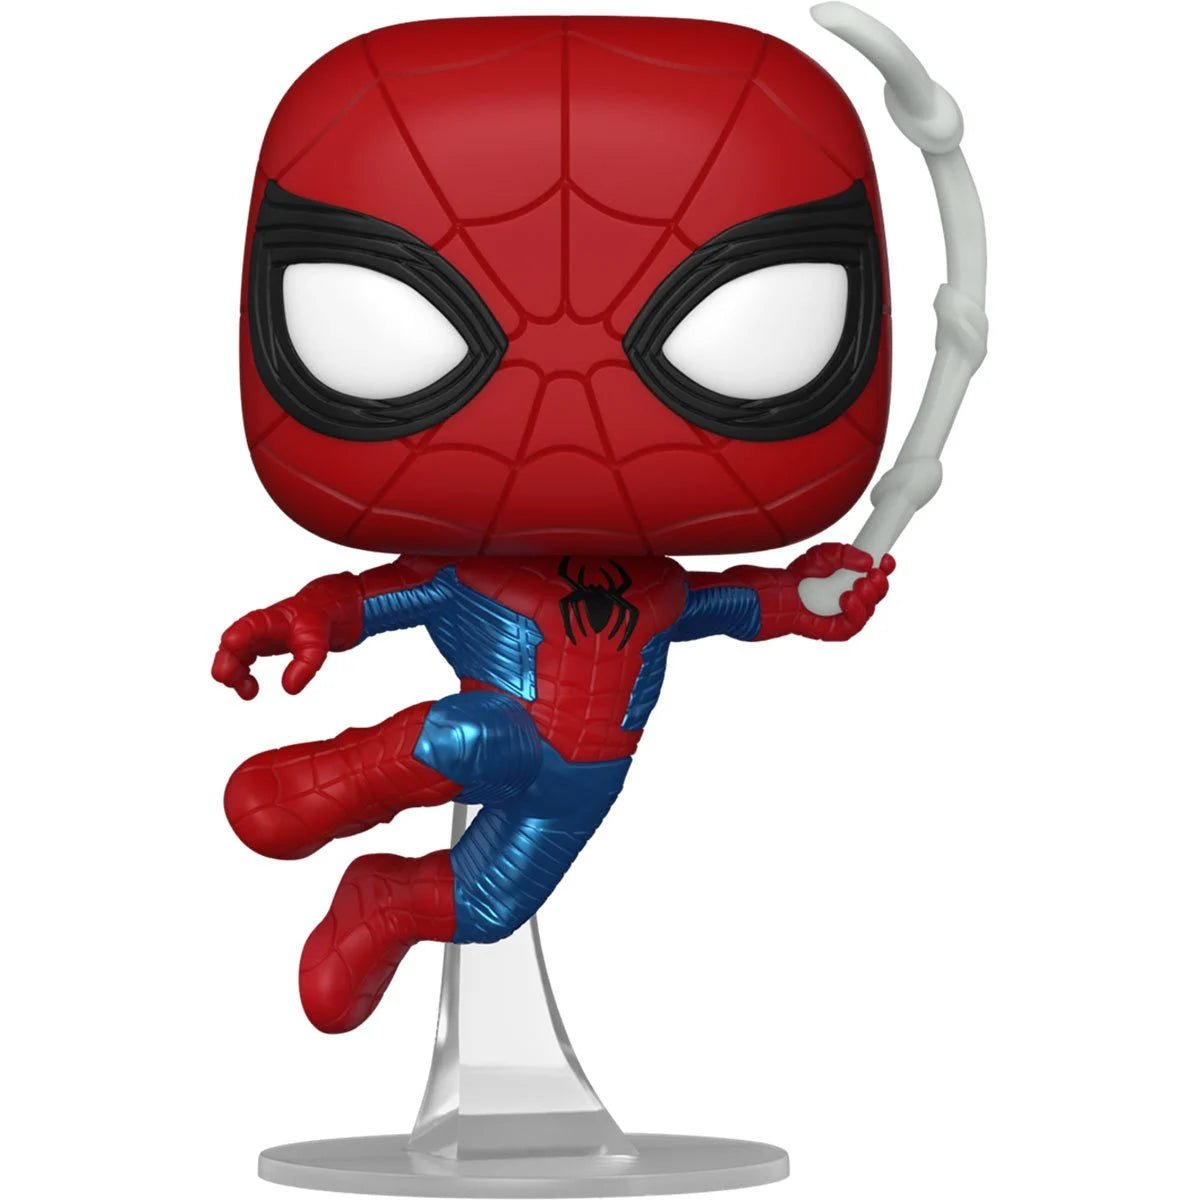 Spider-Man No Way Home Finale Suit Pop! Vinyl Figure